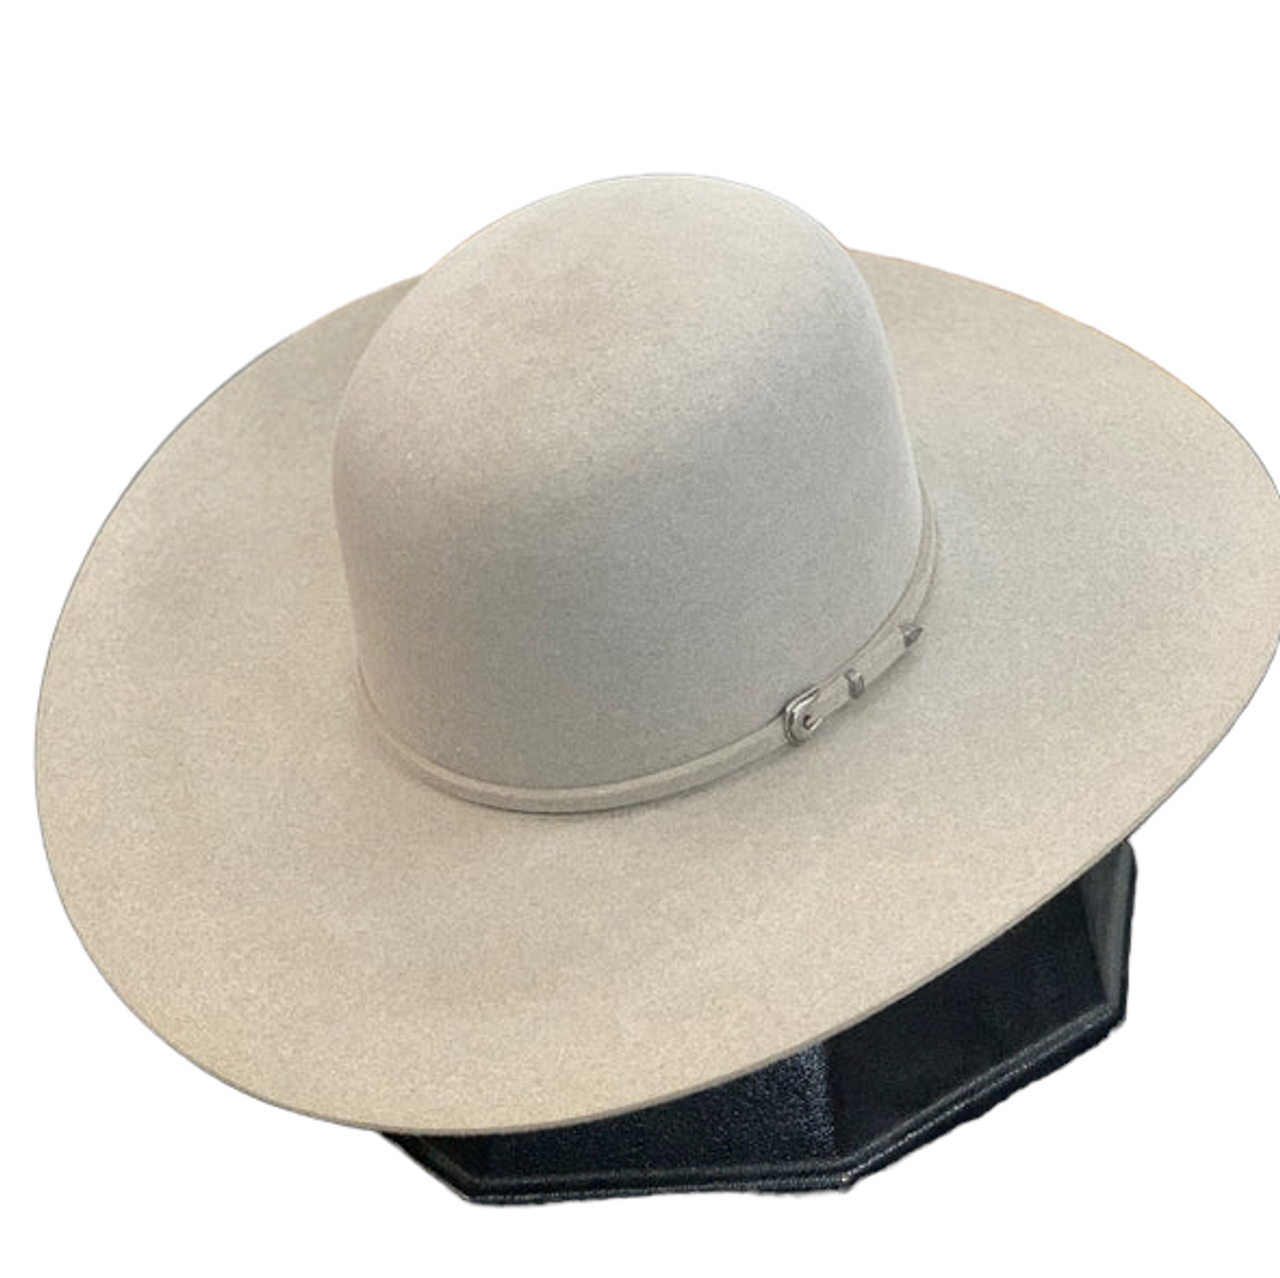 Rodeo King 7X Crystal | Felt Cowboy Hat 7